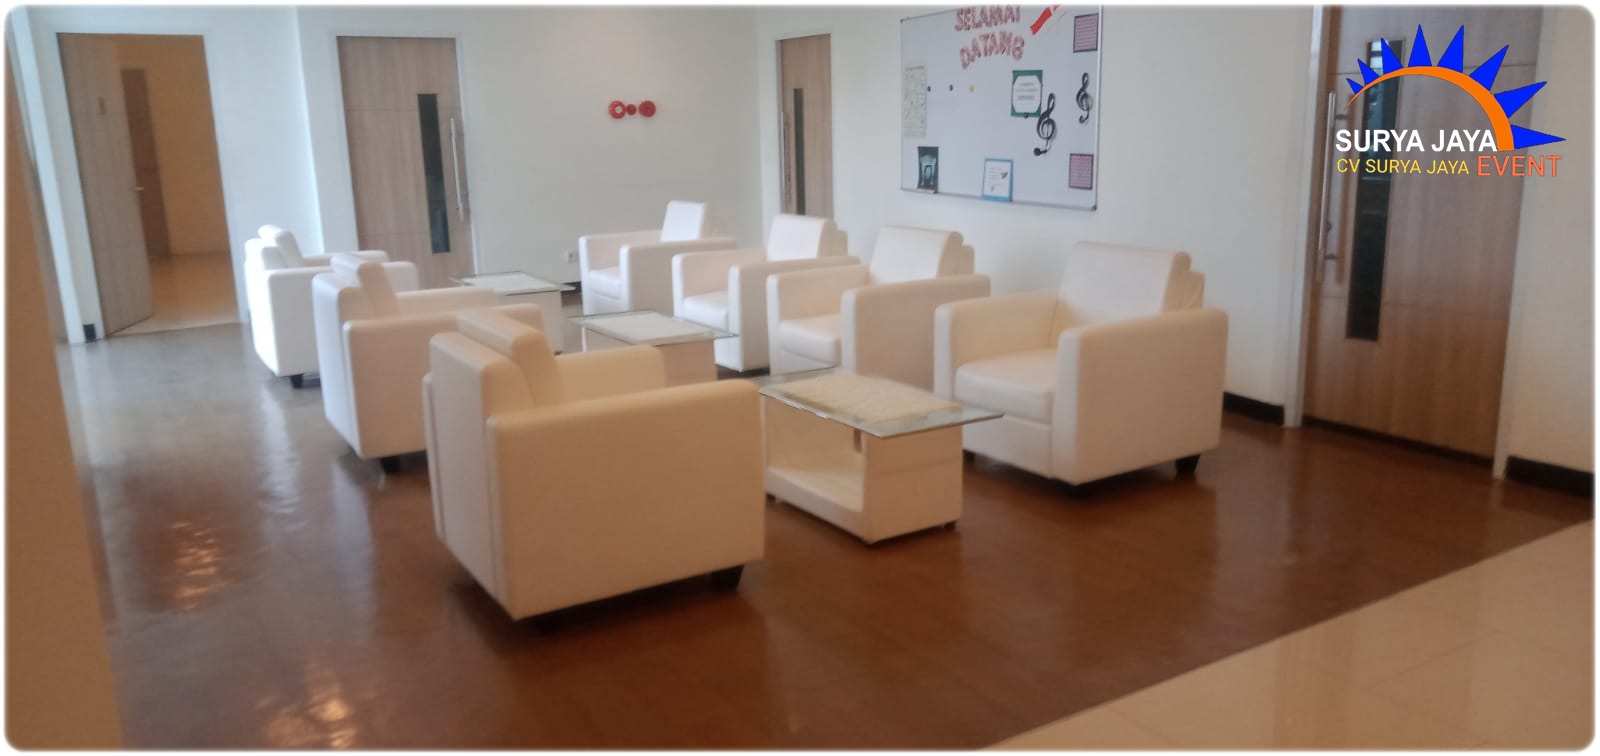 Pusat Sewa Sofa Single Putih Murah Berkualitas Di Jabodetabek